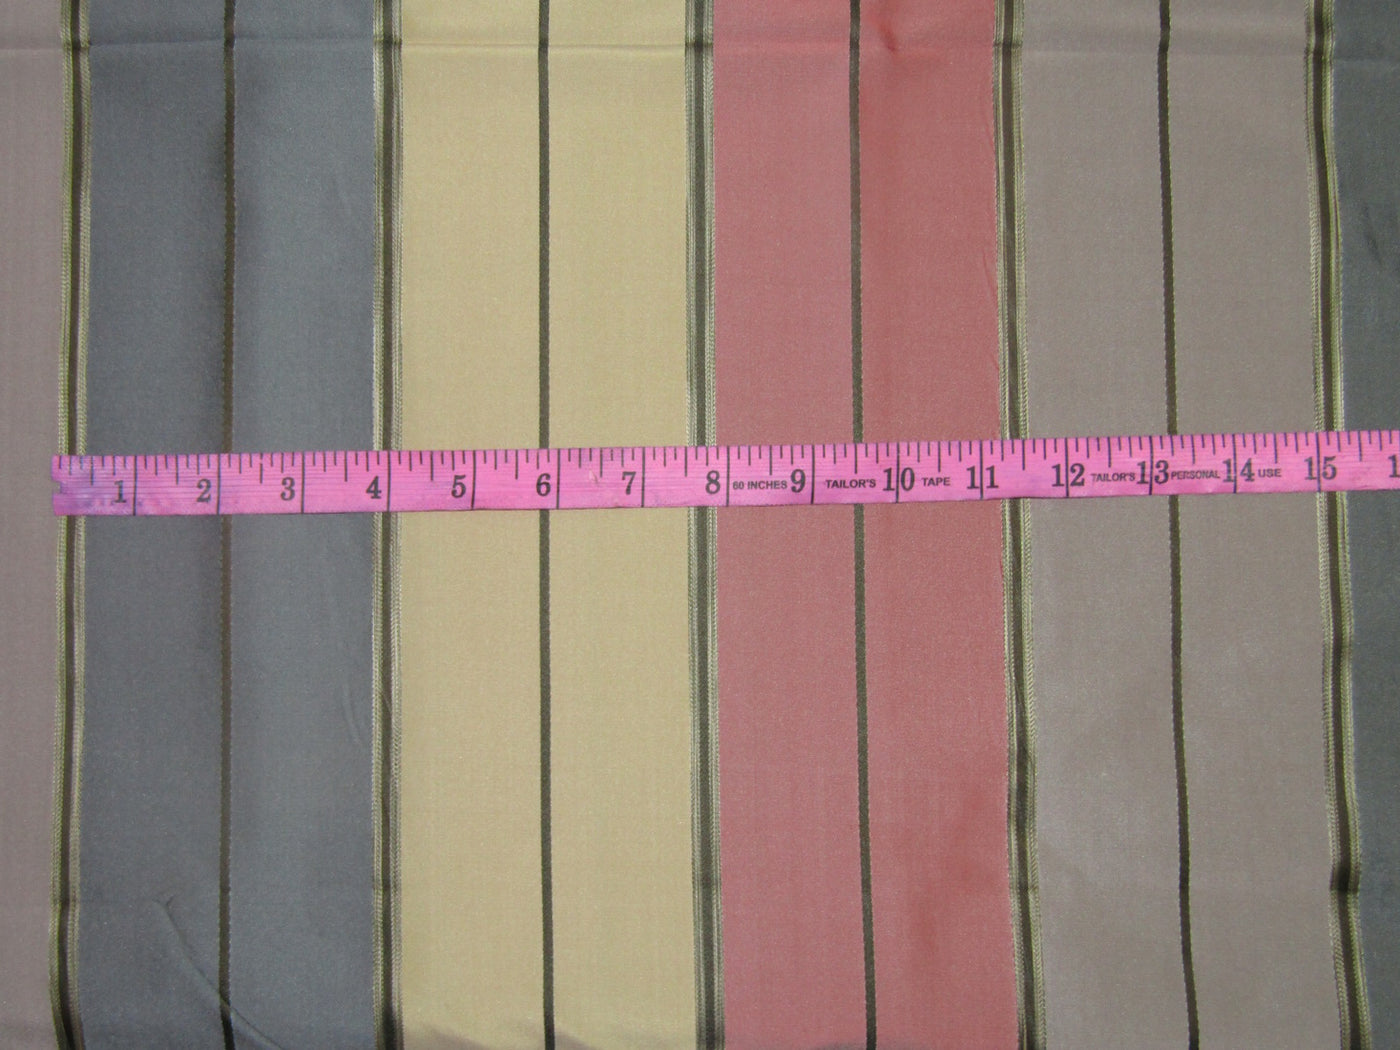 100% silk tafetta stripes multi color fabric TAFS164[1] 54&quot; wide